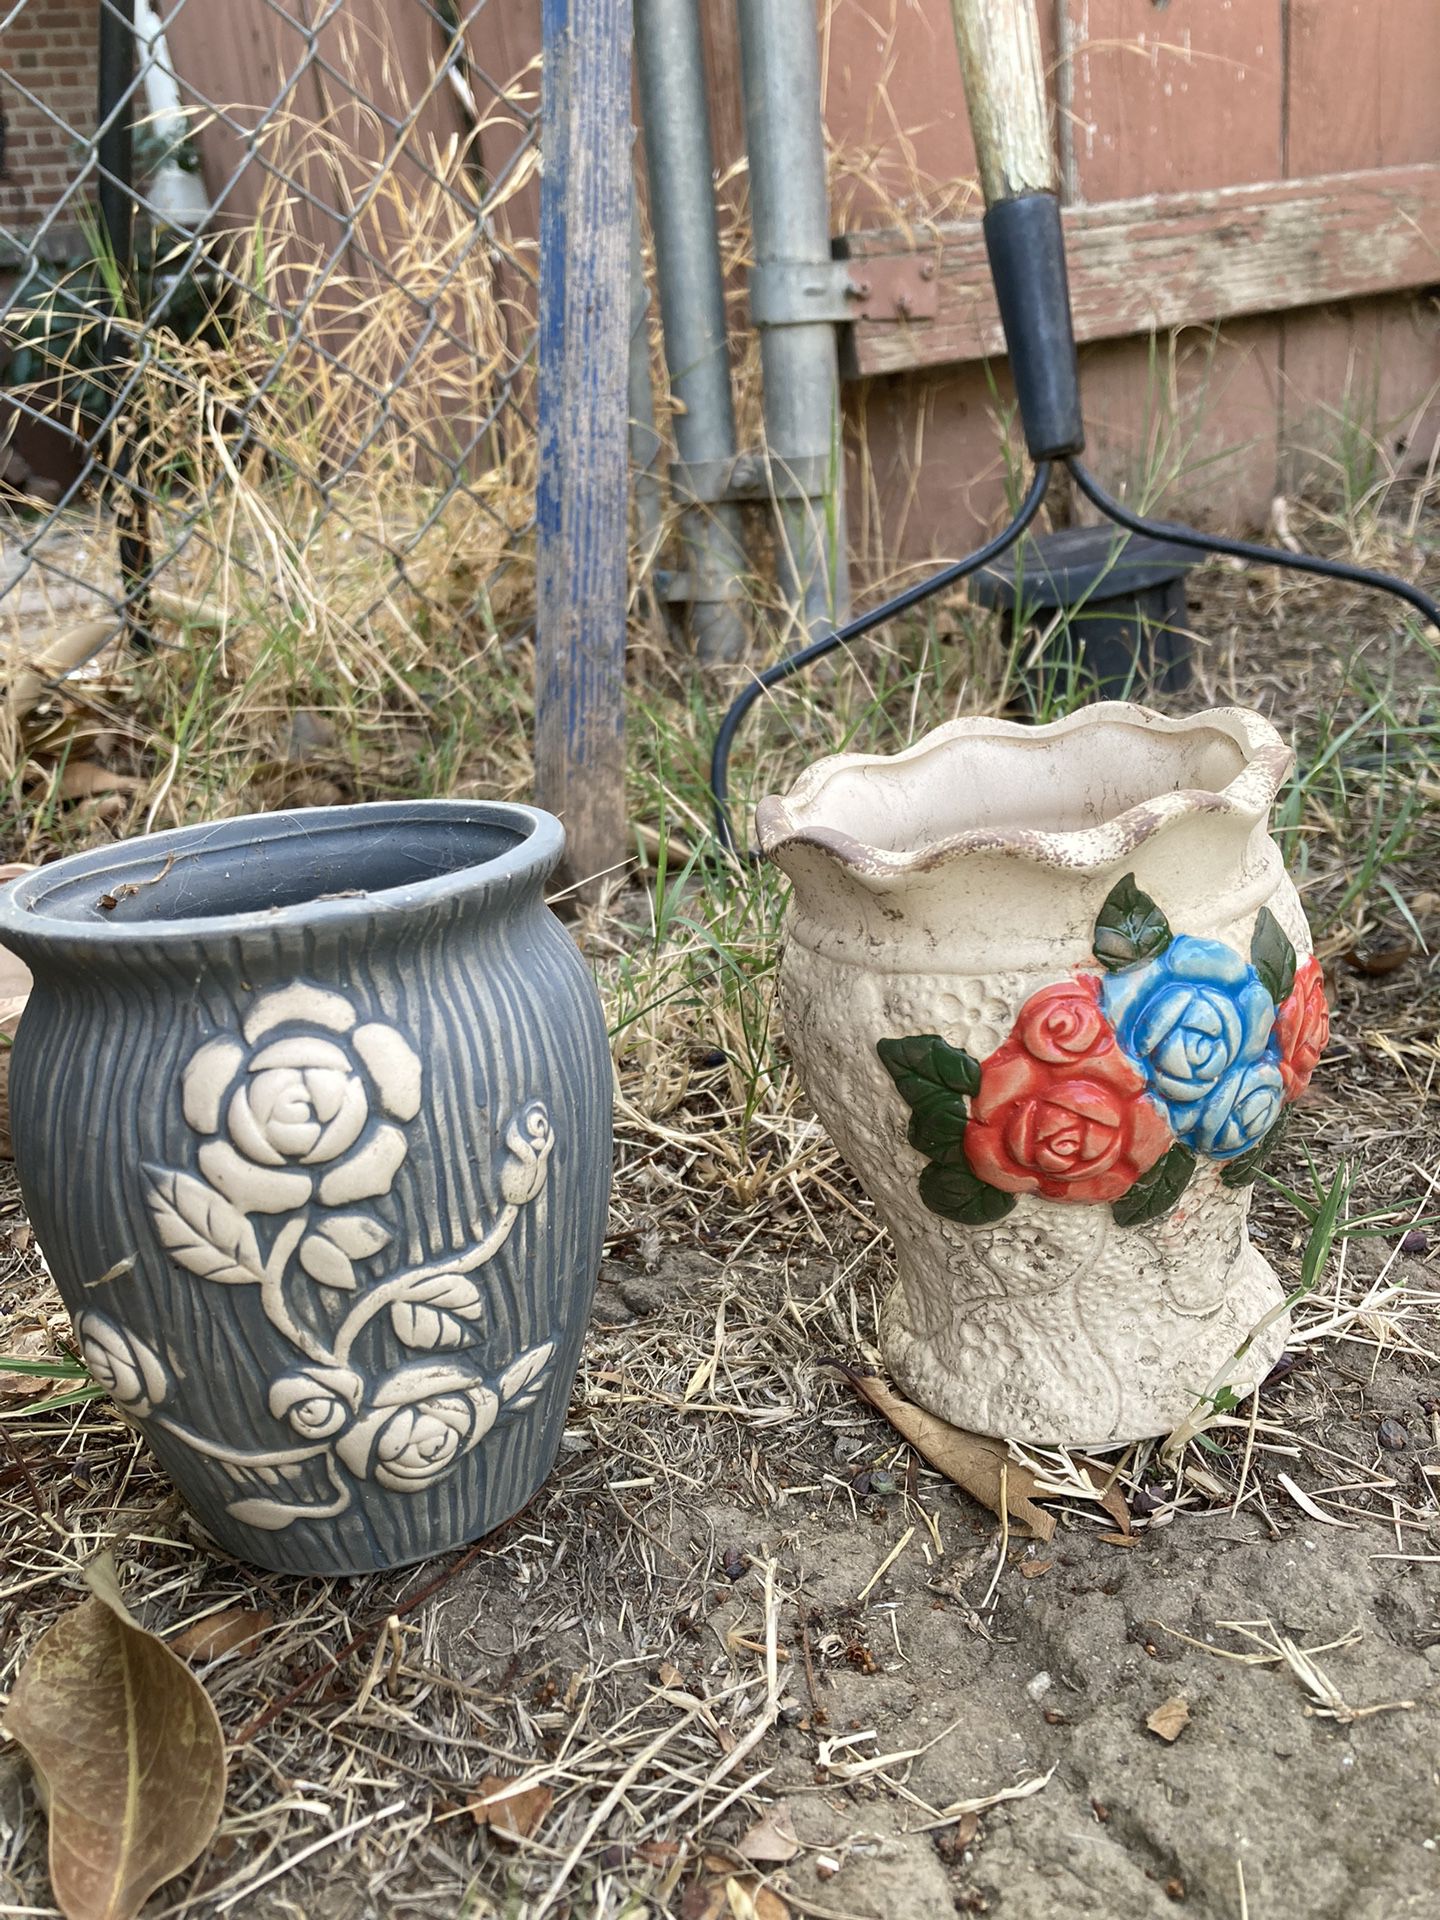 A pair of flower pot